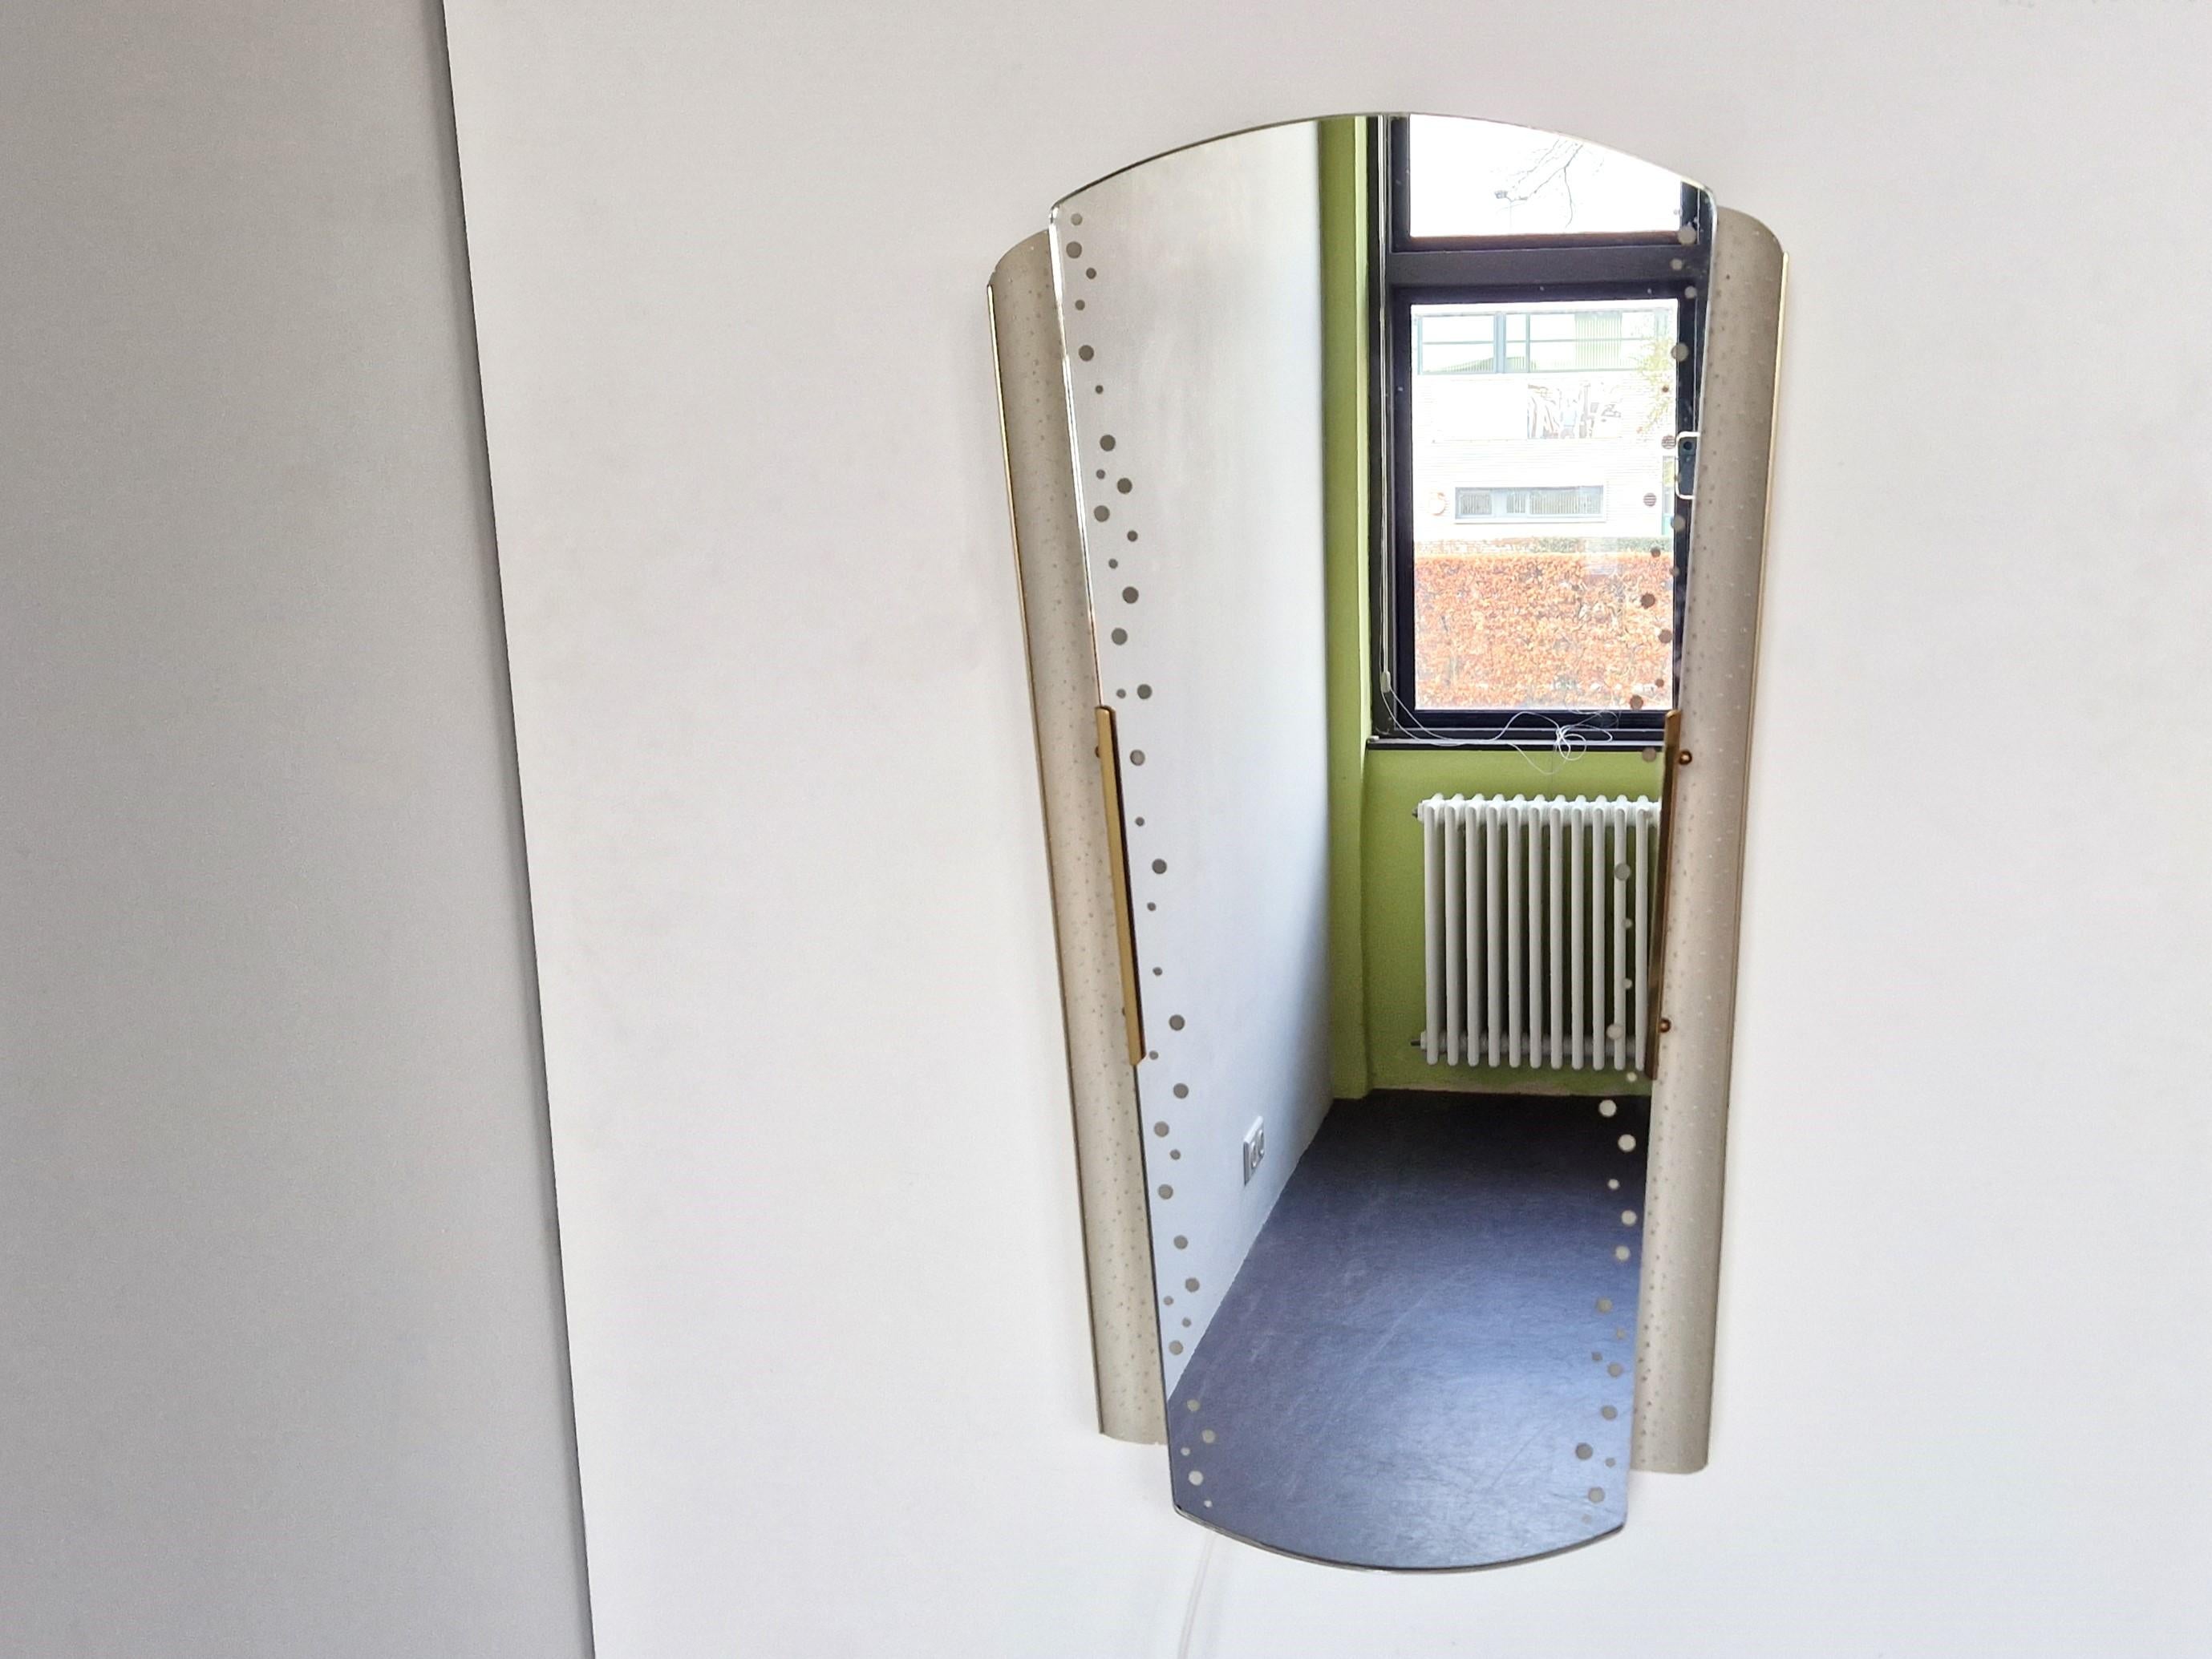 Dieser beleuchtete Spiegel wurde in den 1950er Jahren von Ernest Igl für Hillebrand Lighting in Deutschland entworfen. Ein schöner Spiegel und Blickfang! Der perforierte, cremefarbene Metallrahmen, die Messingdetails und die Punkte im verspiegelten